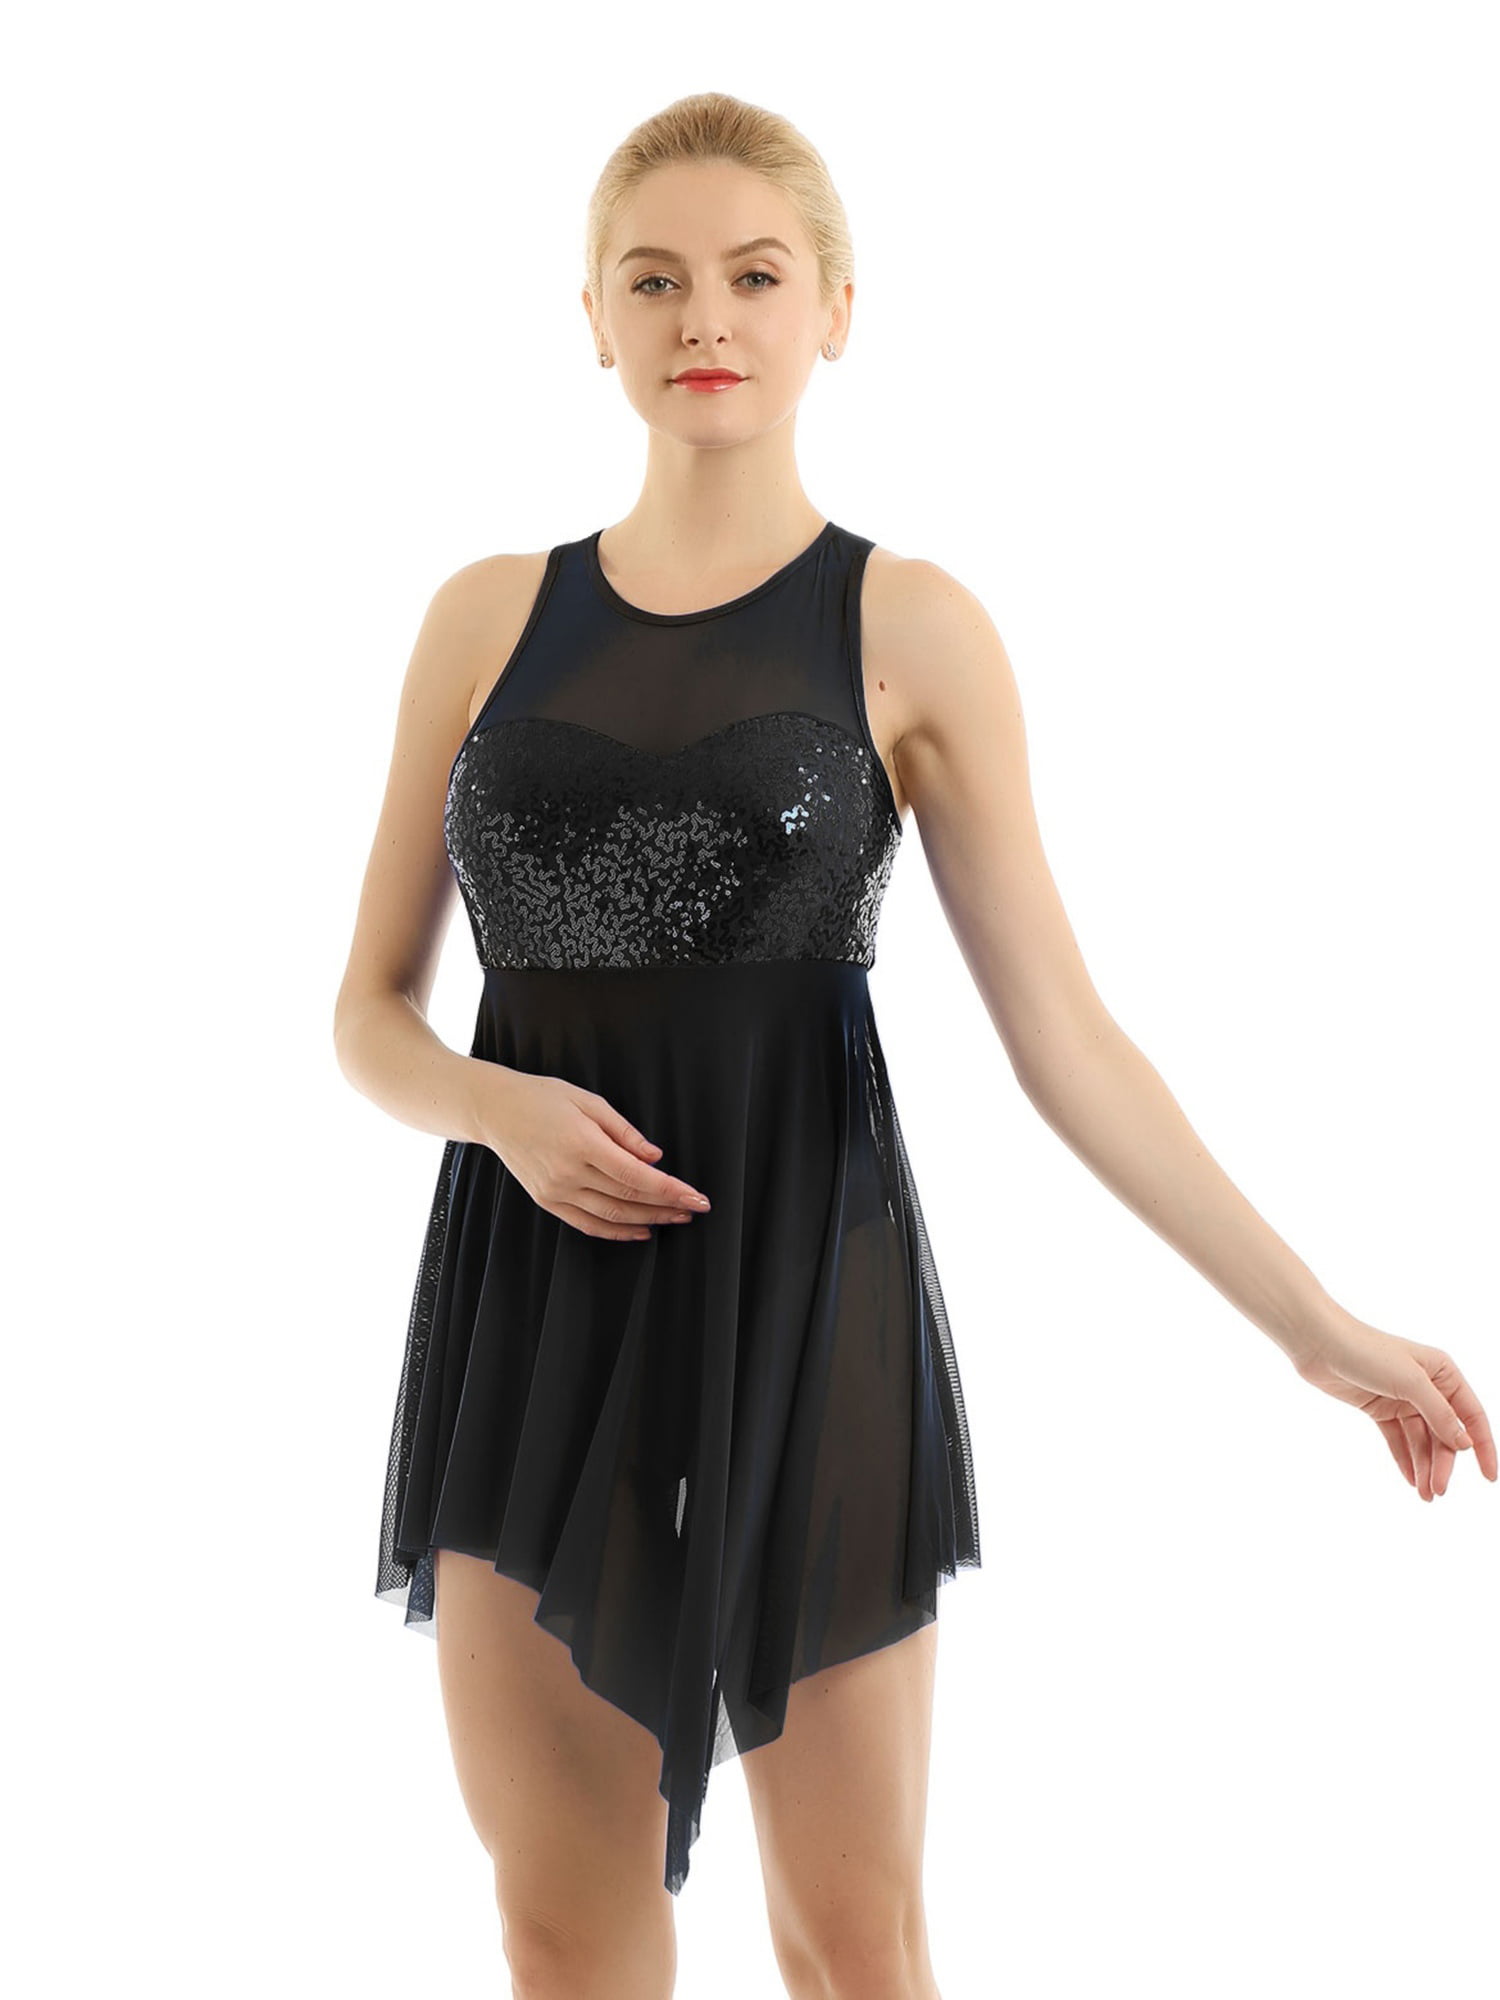 Girls Lyrical Dance Mesh Dress Contemporary Ballet Dance Costume Leotard Skirt 